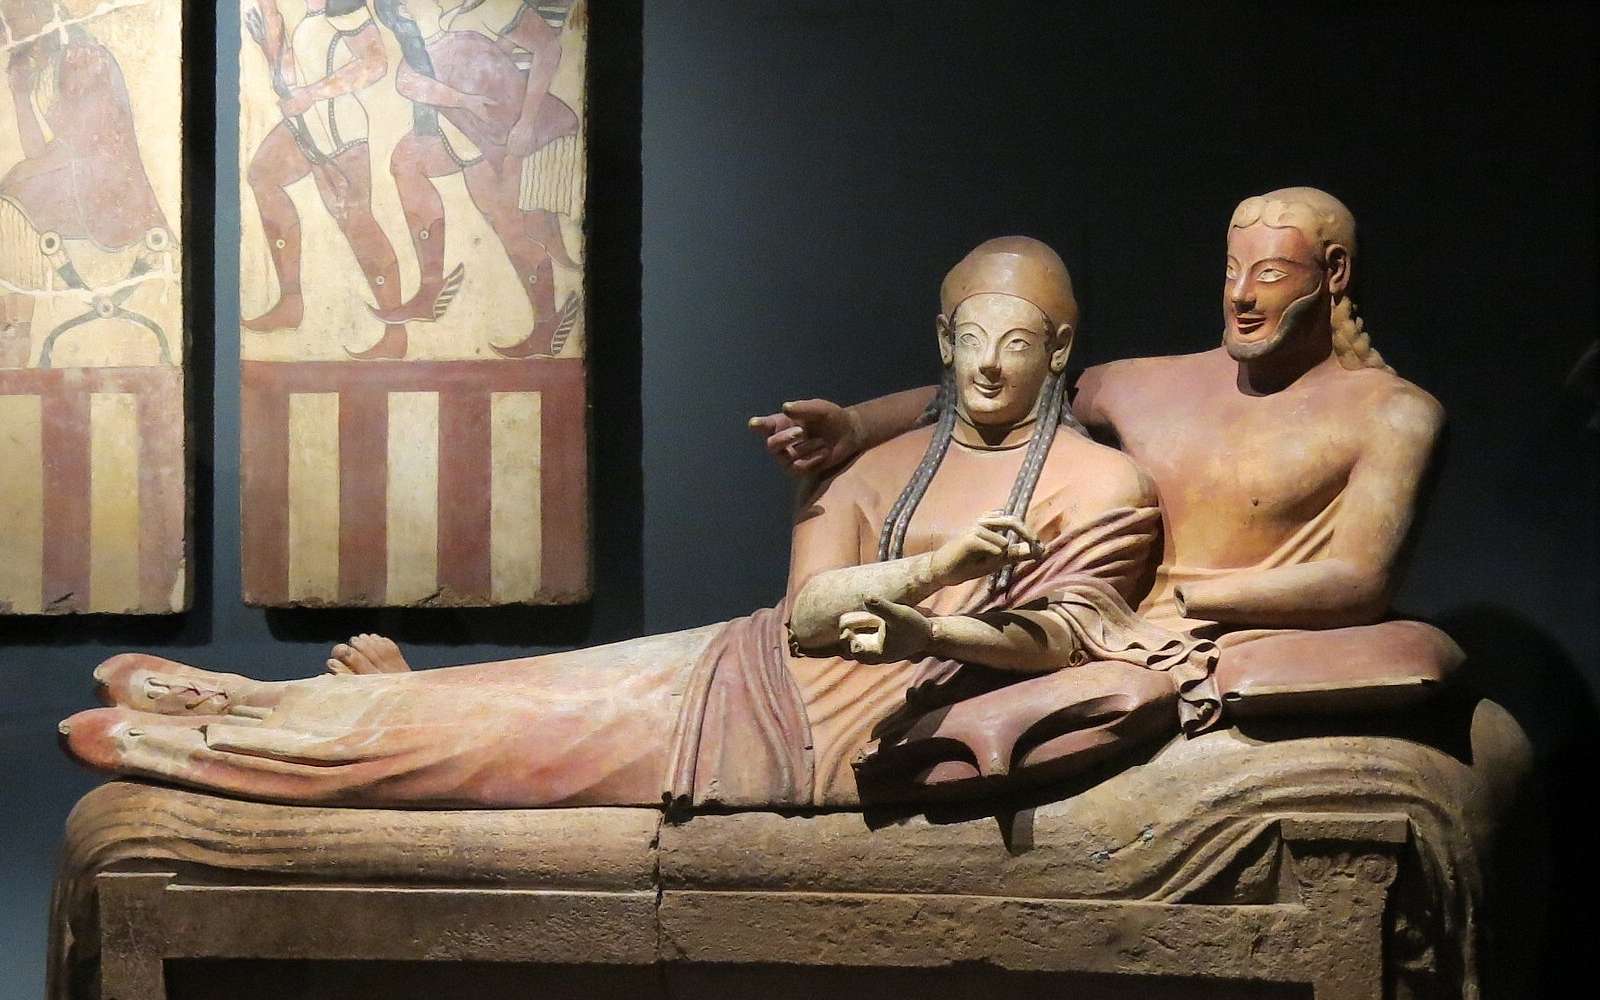 Découverte exceptionnelle de 24 statues de bronze romaine et étrusque qui pourraient « réécrire l'histoire »